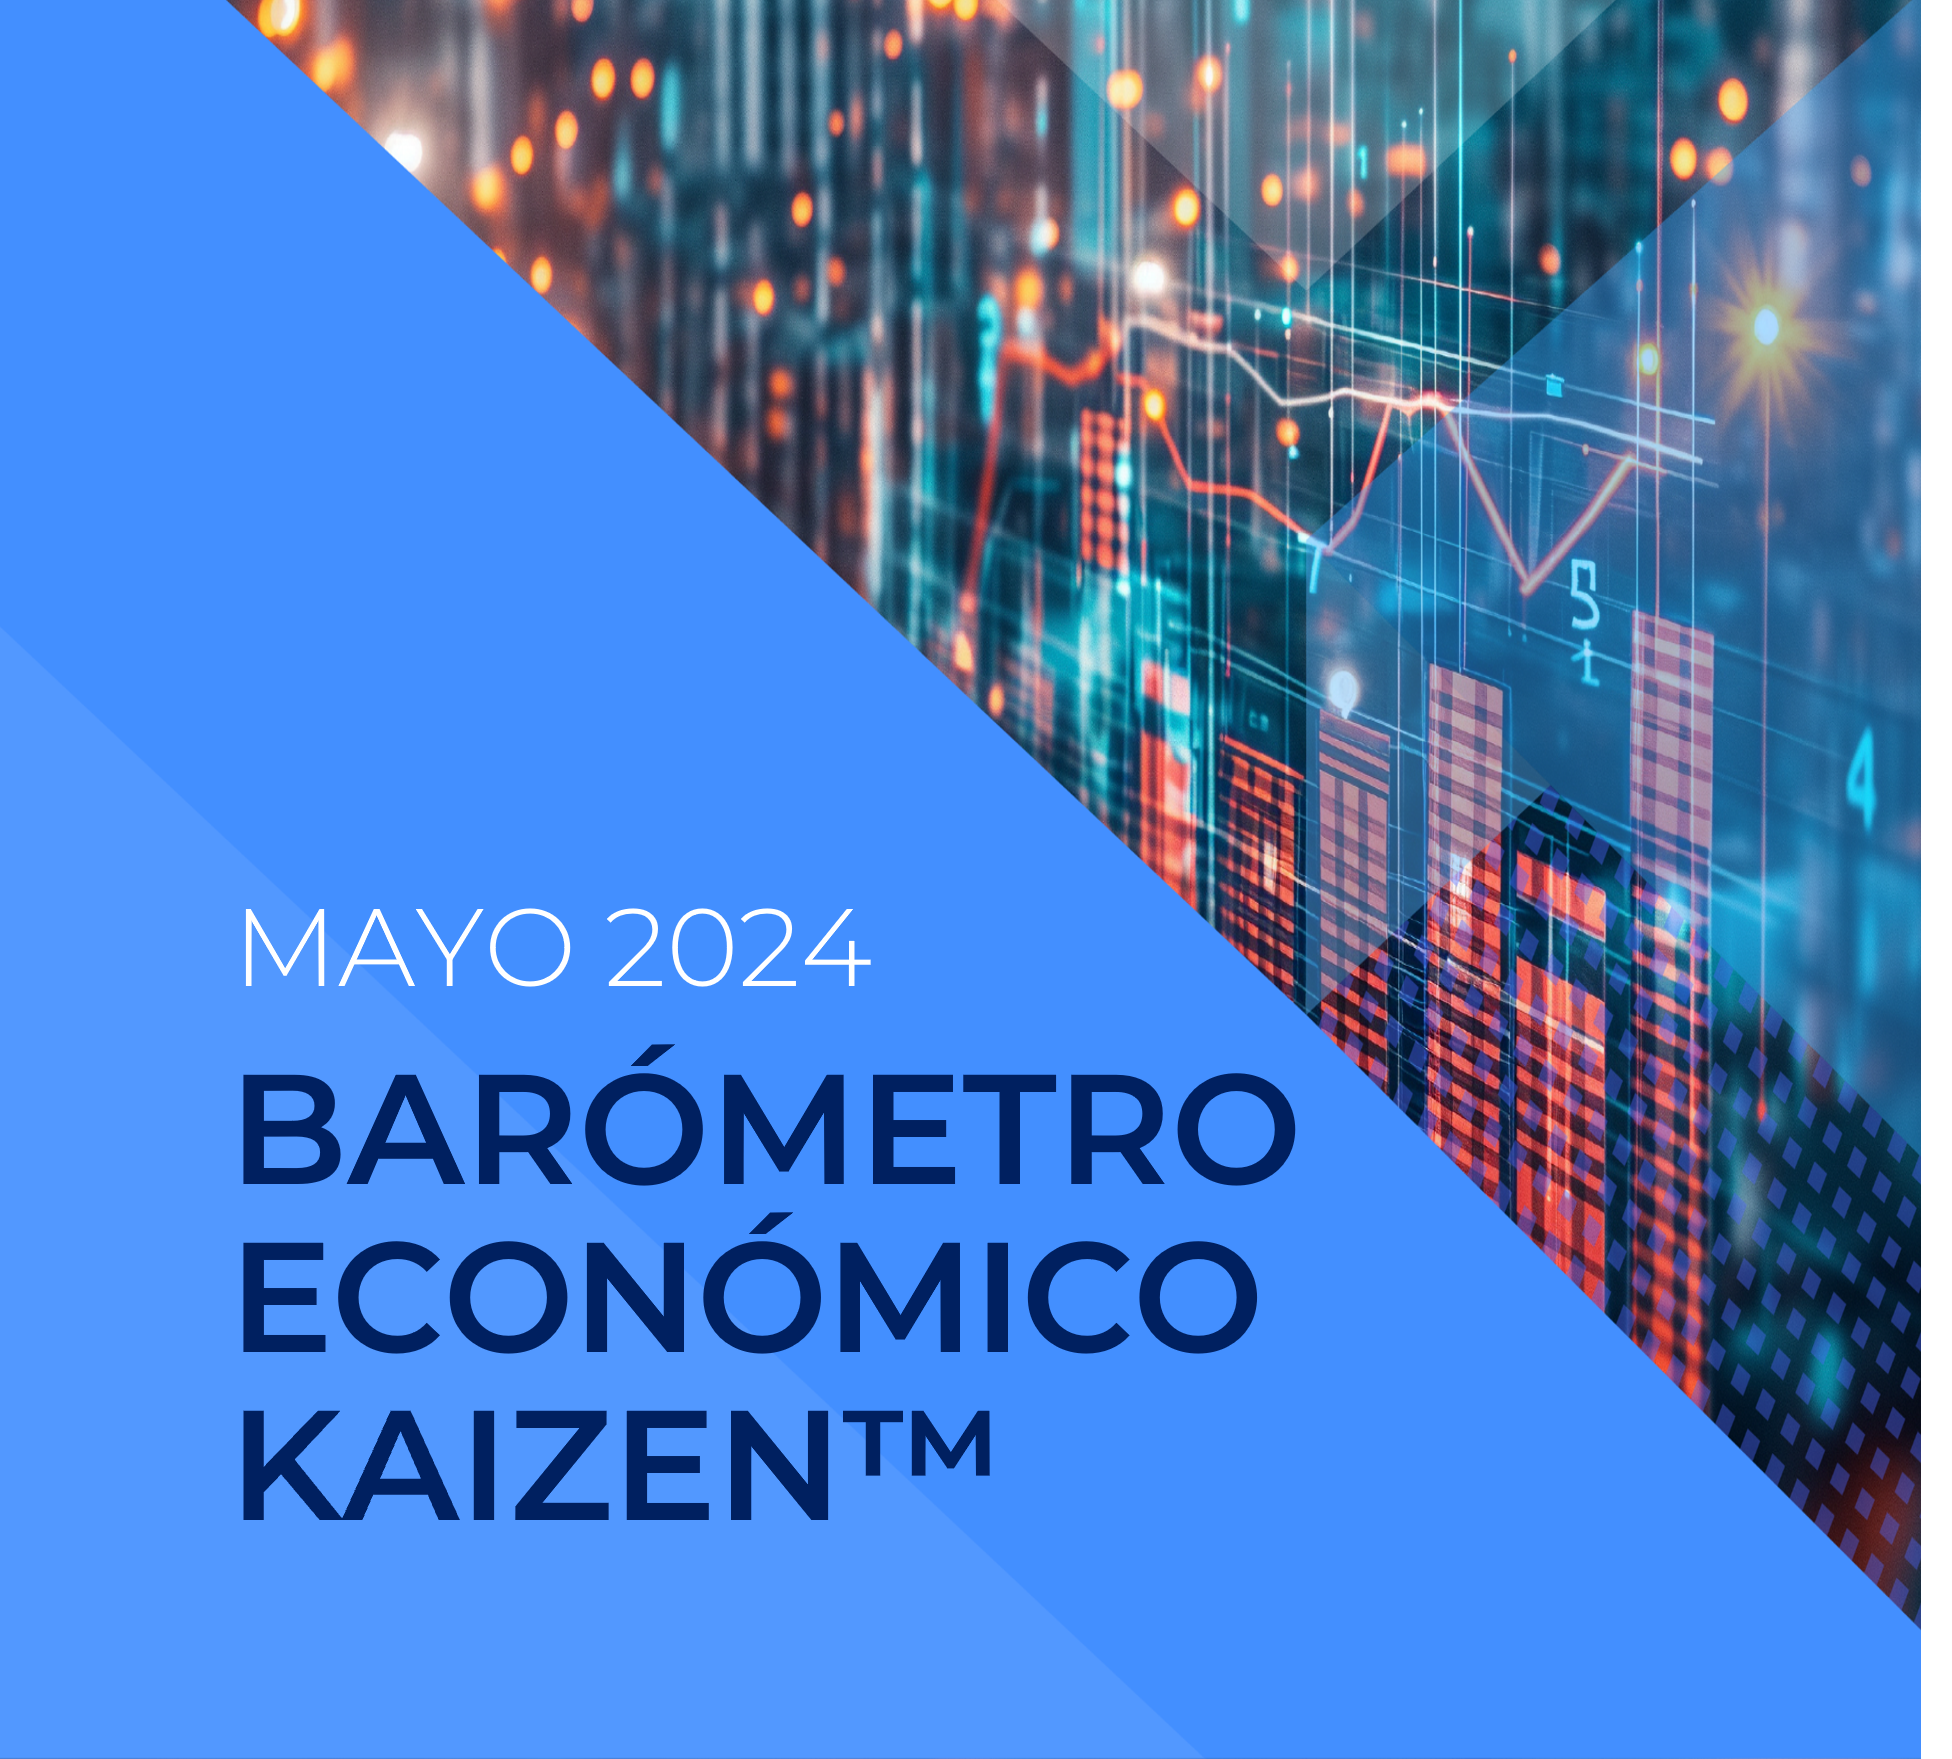 Barómetro Económico KAIZEN™ – Navegar en el cambio y afrontar un futuro incierto